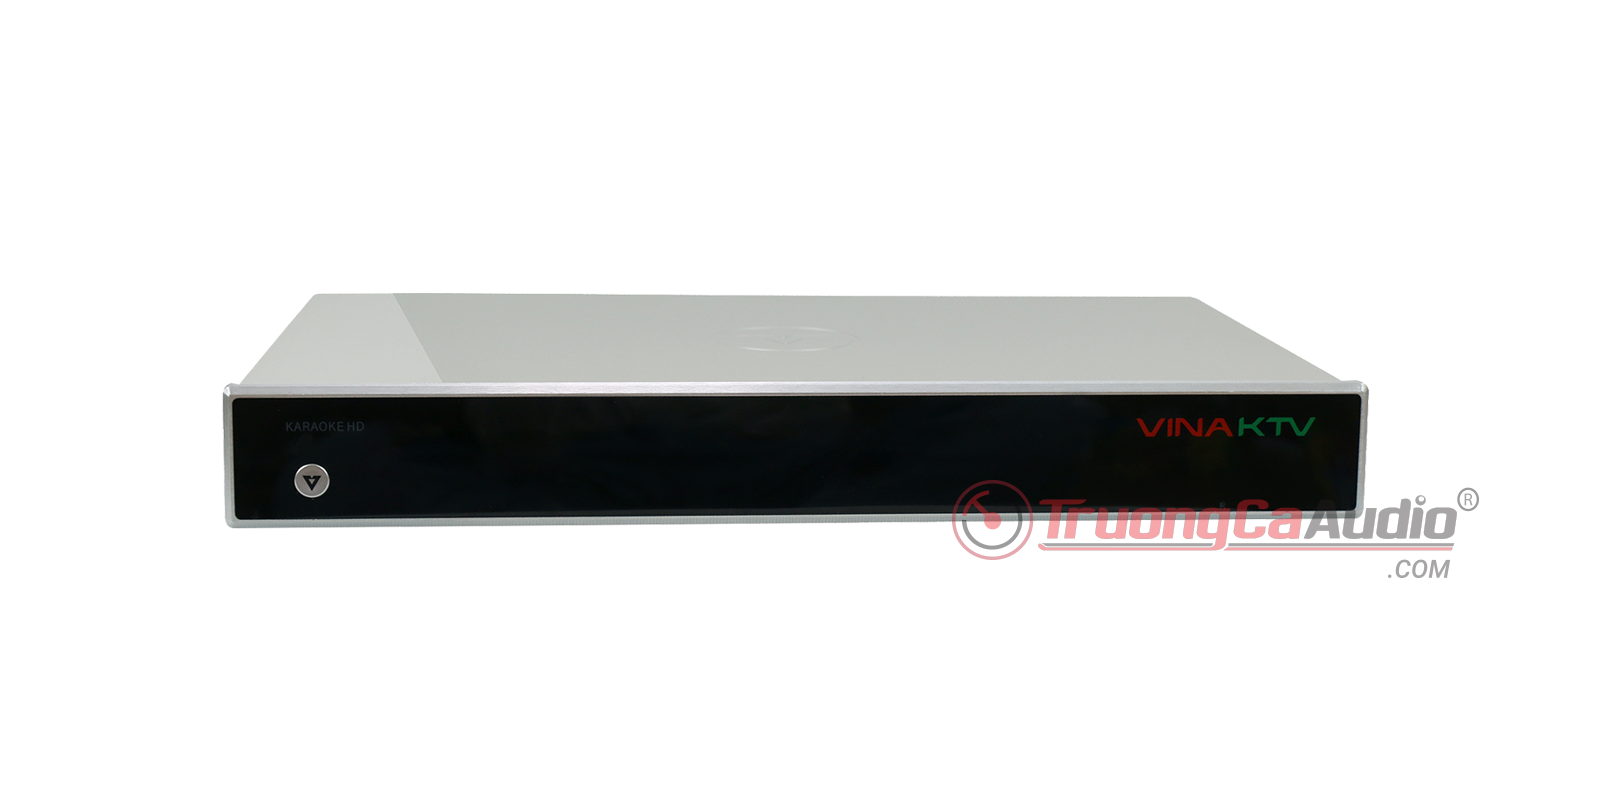 Đầu VOD V6++ HD là dòng sản phẩm chất lượng cao, phù hợp với dàn karaoke gia đình cao cấp